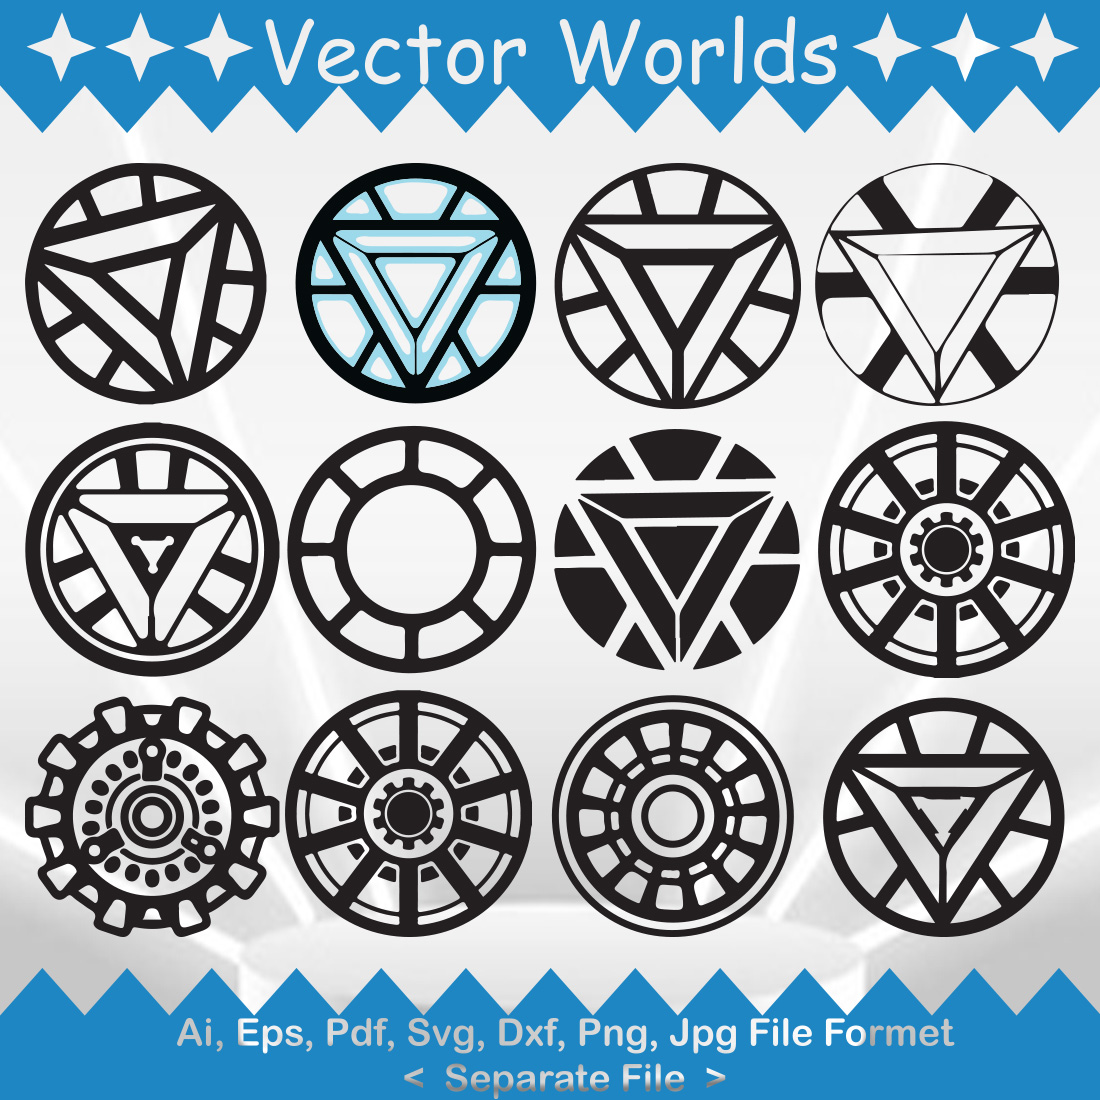 Arc Reactor Logo SVG Vector Design cover image.